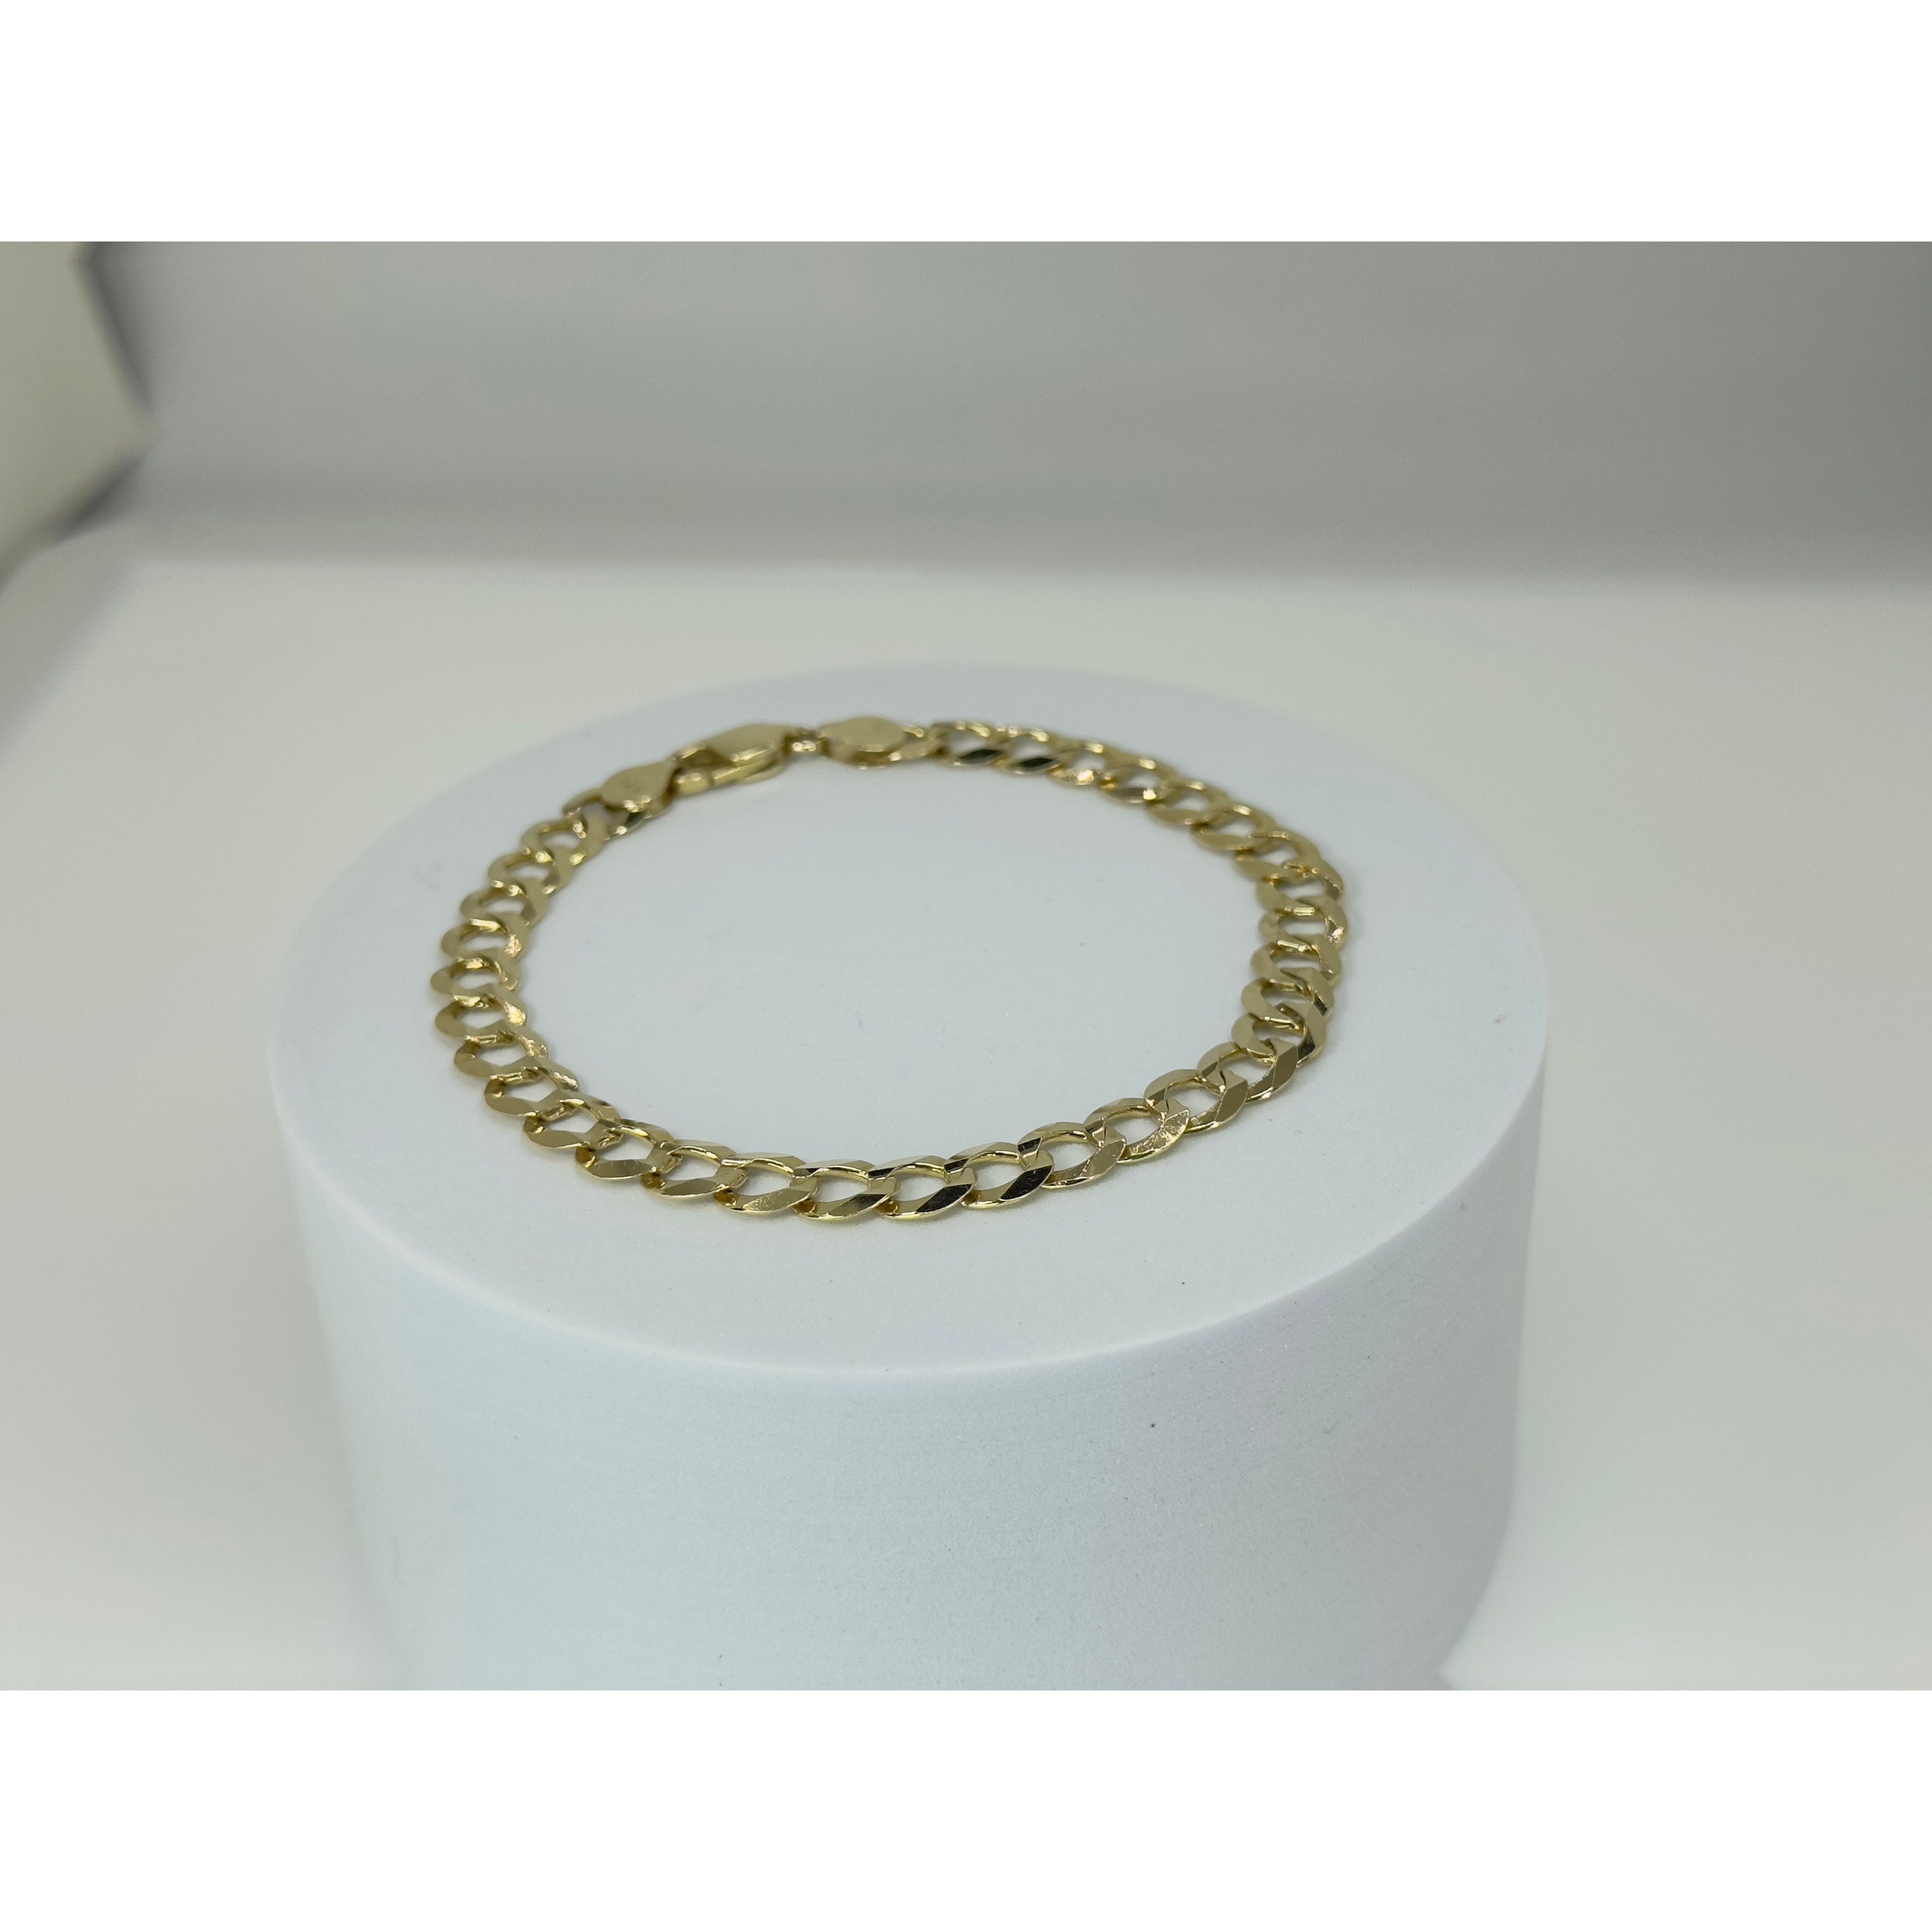 DR1710 - 14K Yellow Gold - Men's Gold Bracelet